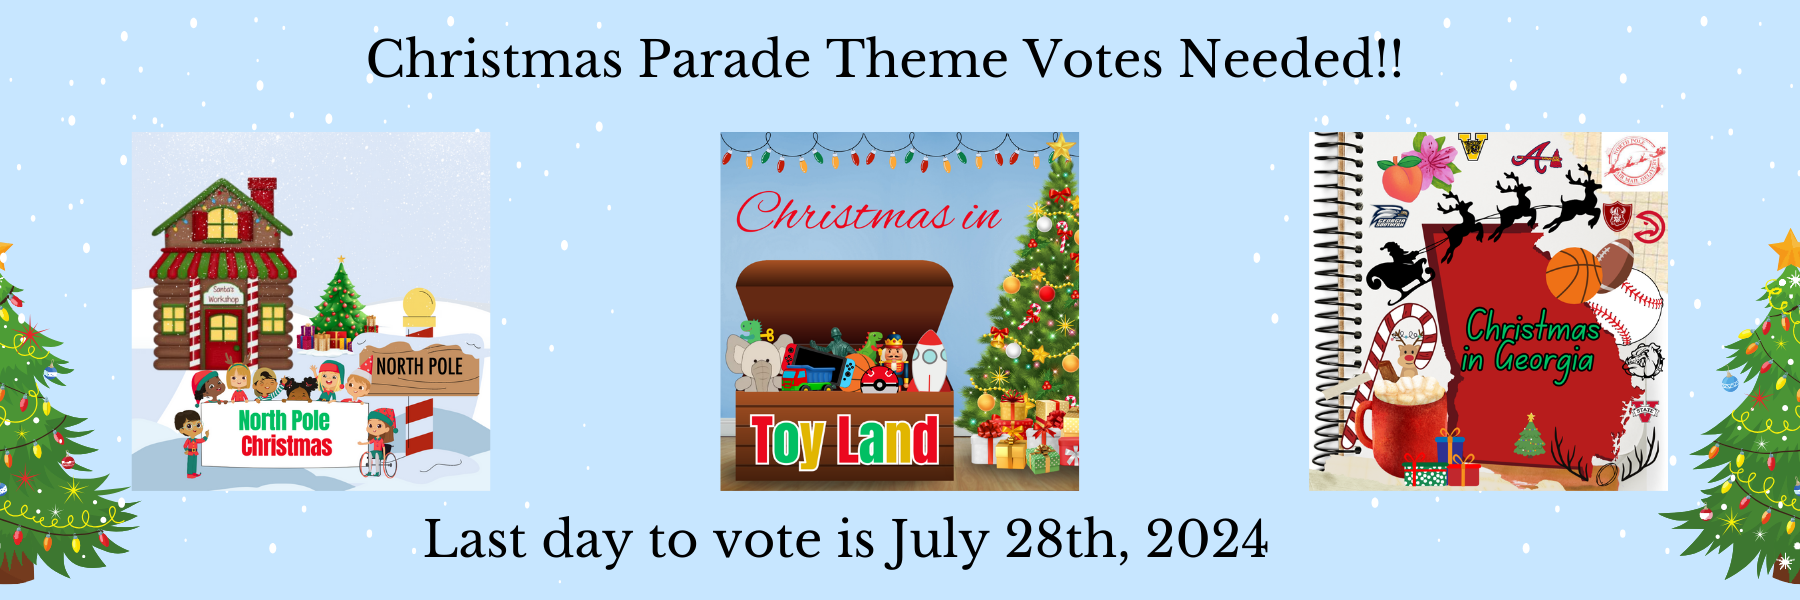 Parade theme poll 